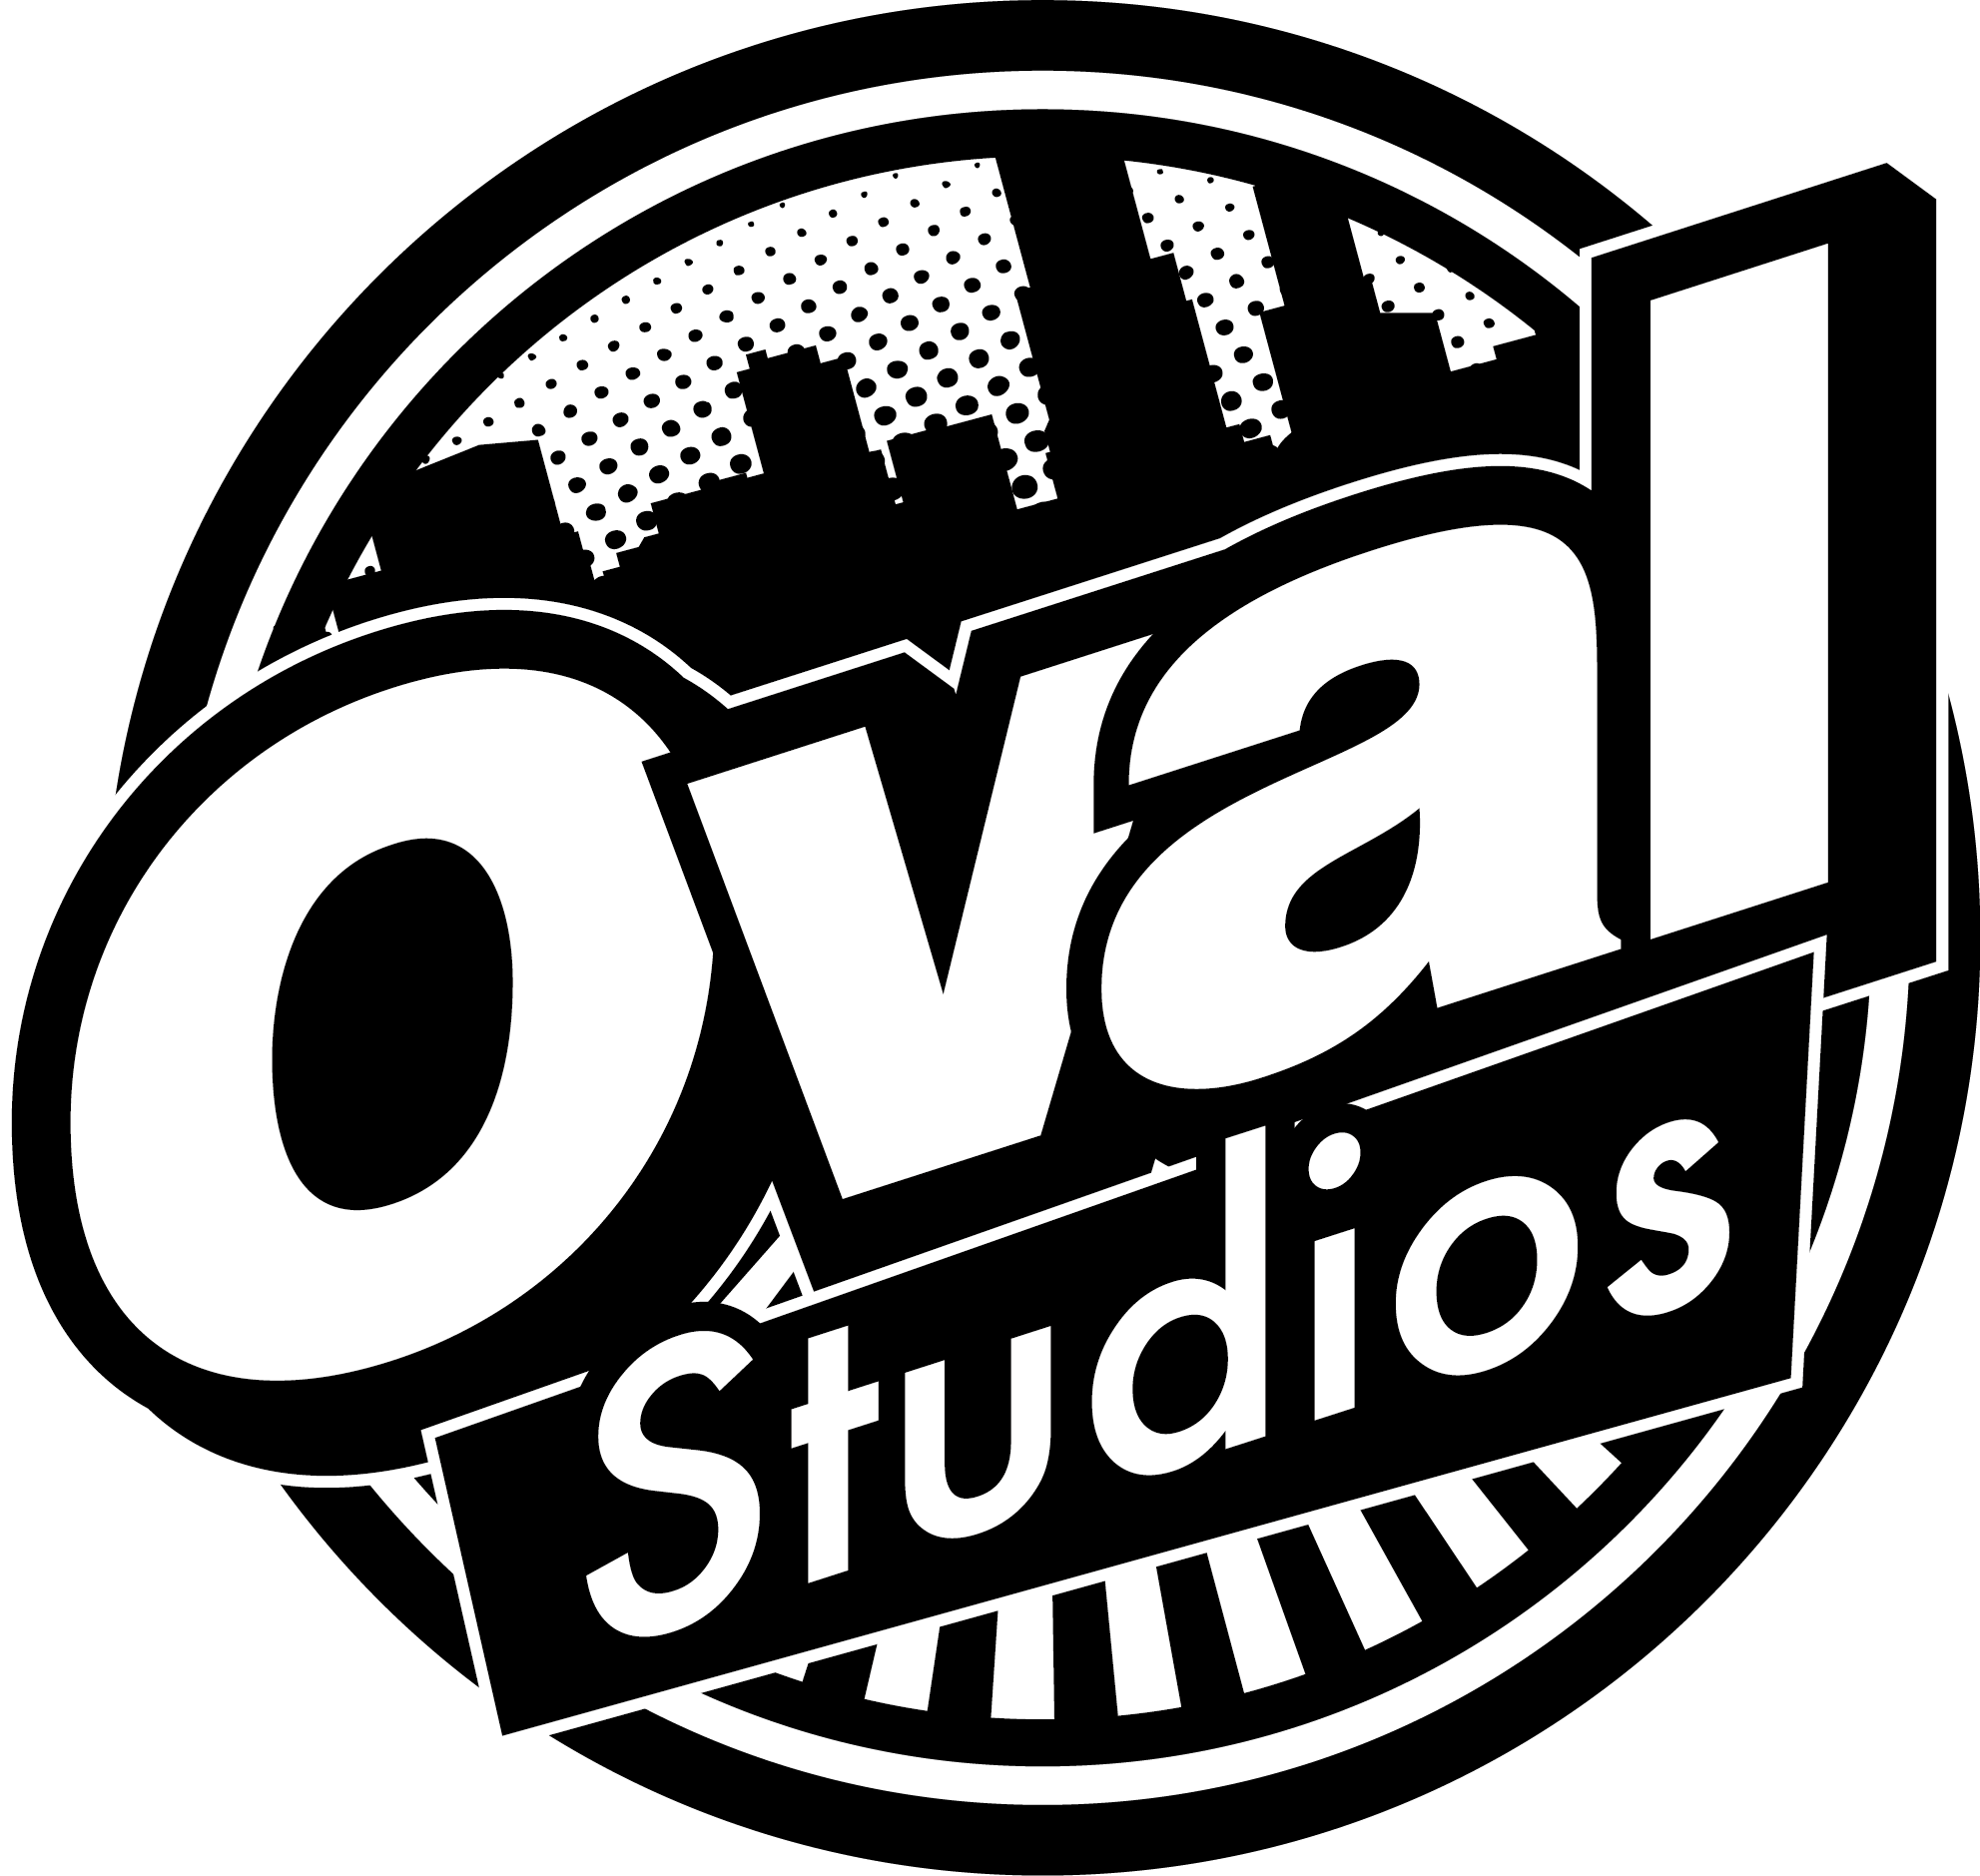 名古屋のレコーディングスタジオ「Oval Studios(オーバルスタジオ)」